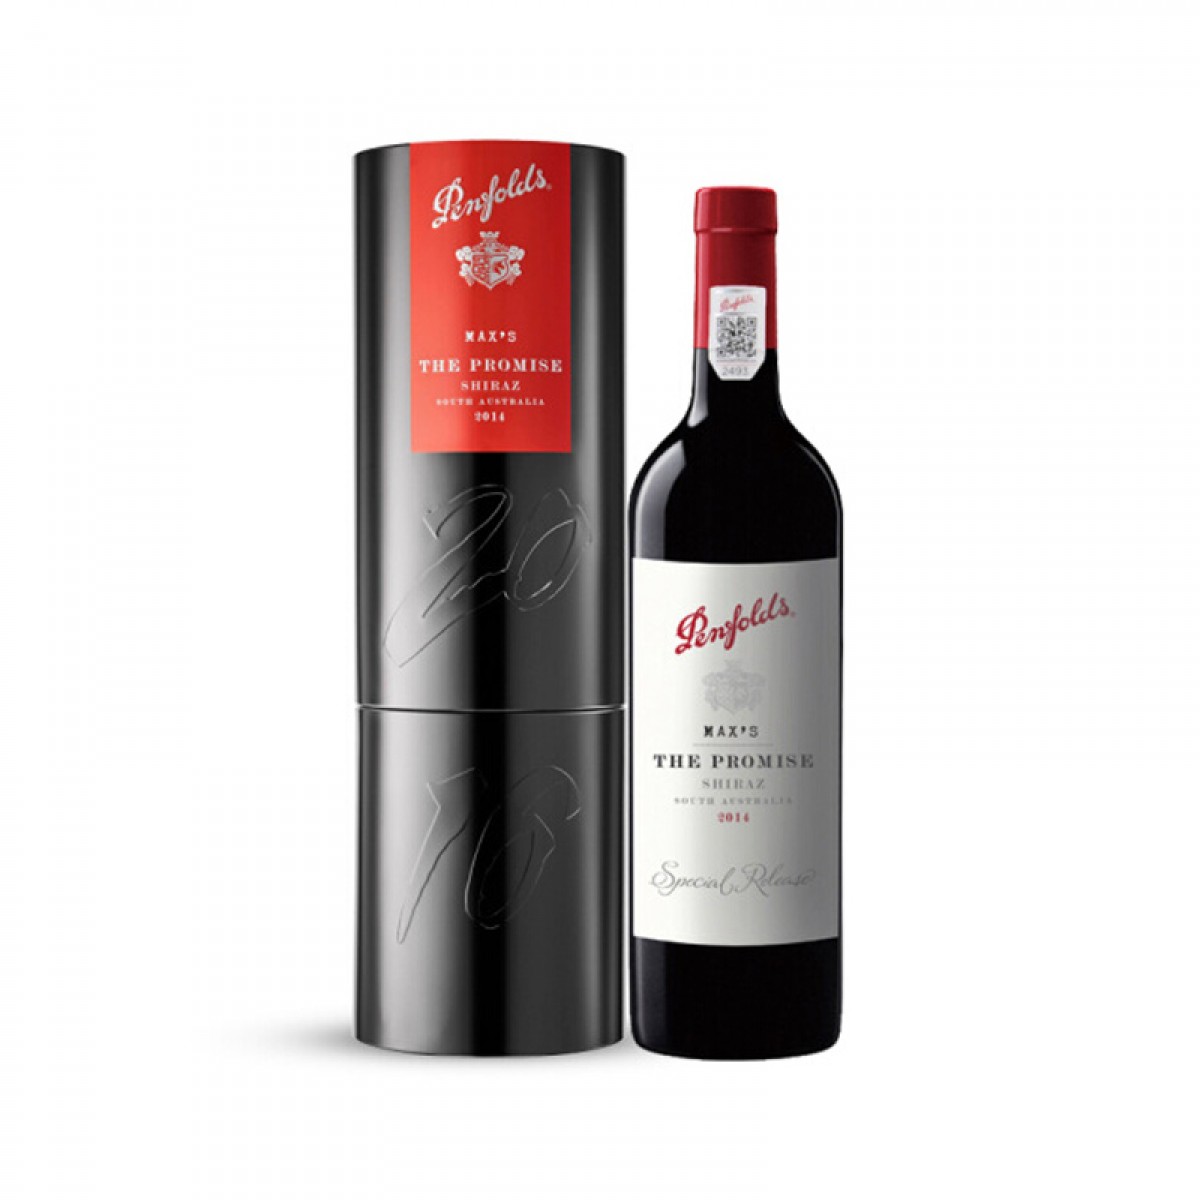 富邑葡萄酒集团 奔富Penfolds 奔富 麦克斯 大师承诺西拉干红葡萄酒 澳大利亚进口 750ml 单支礼盒装